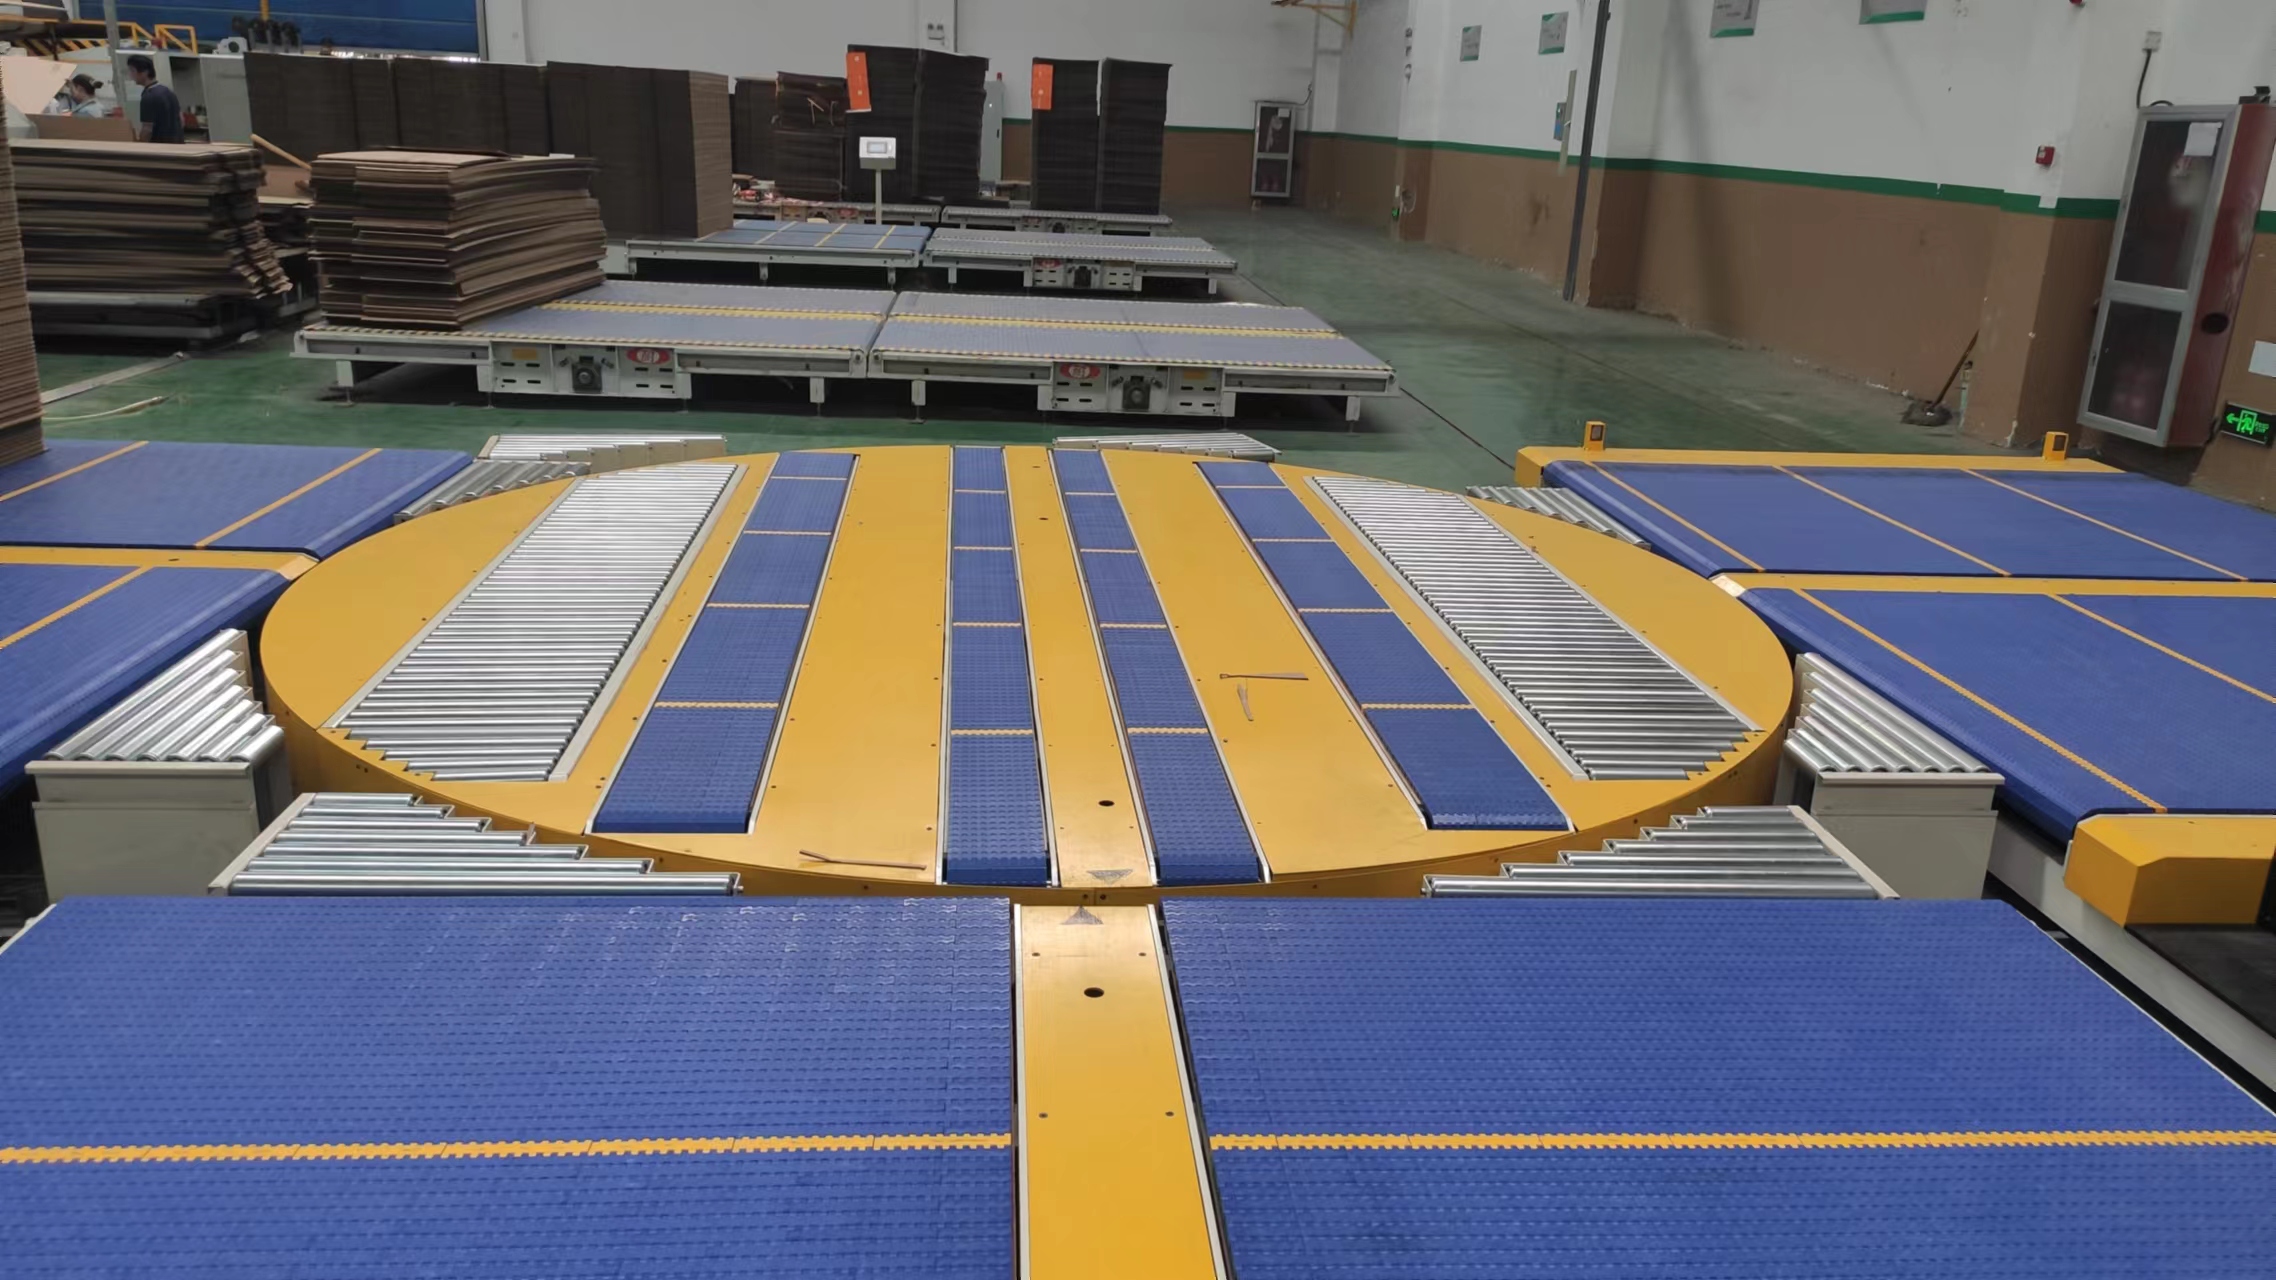 2021 Latest Design Idler Roller Conveyor - Auto Modular Conveyor System Plastics Conveyor Cardboard Conveyor System – GOJON